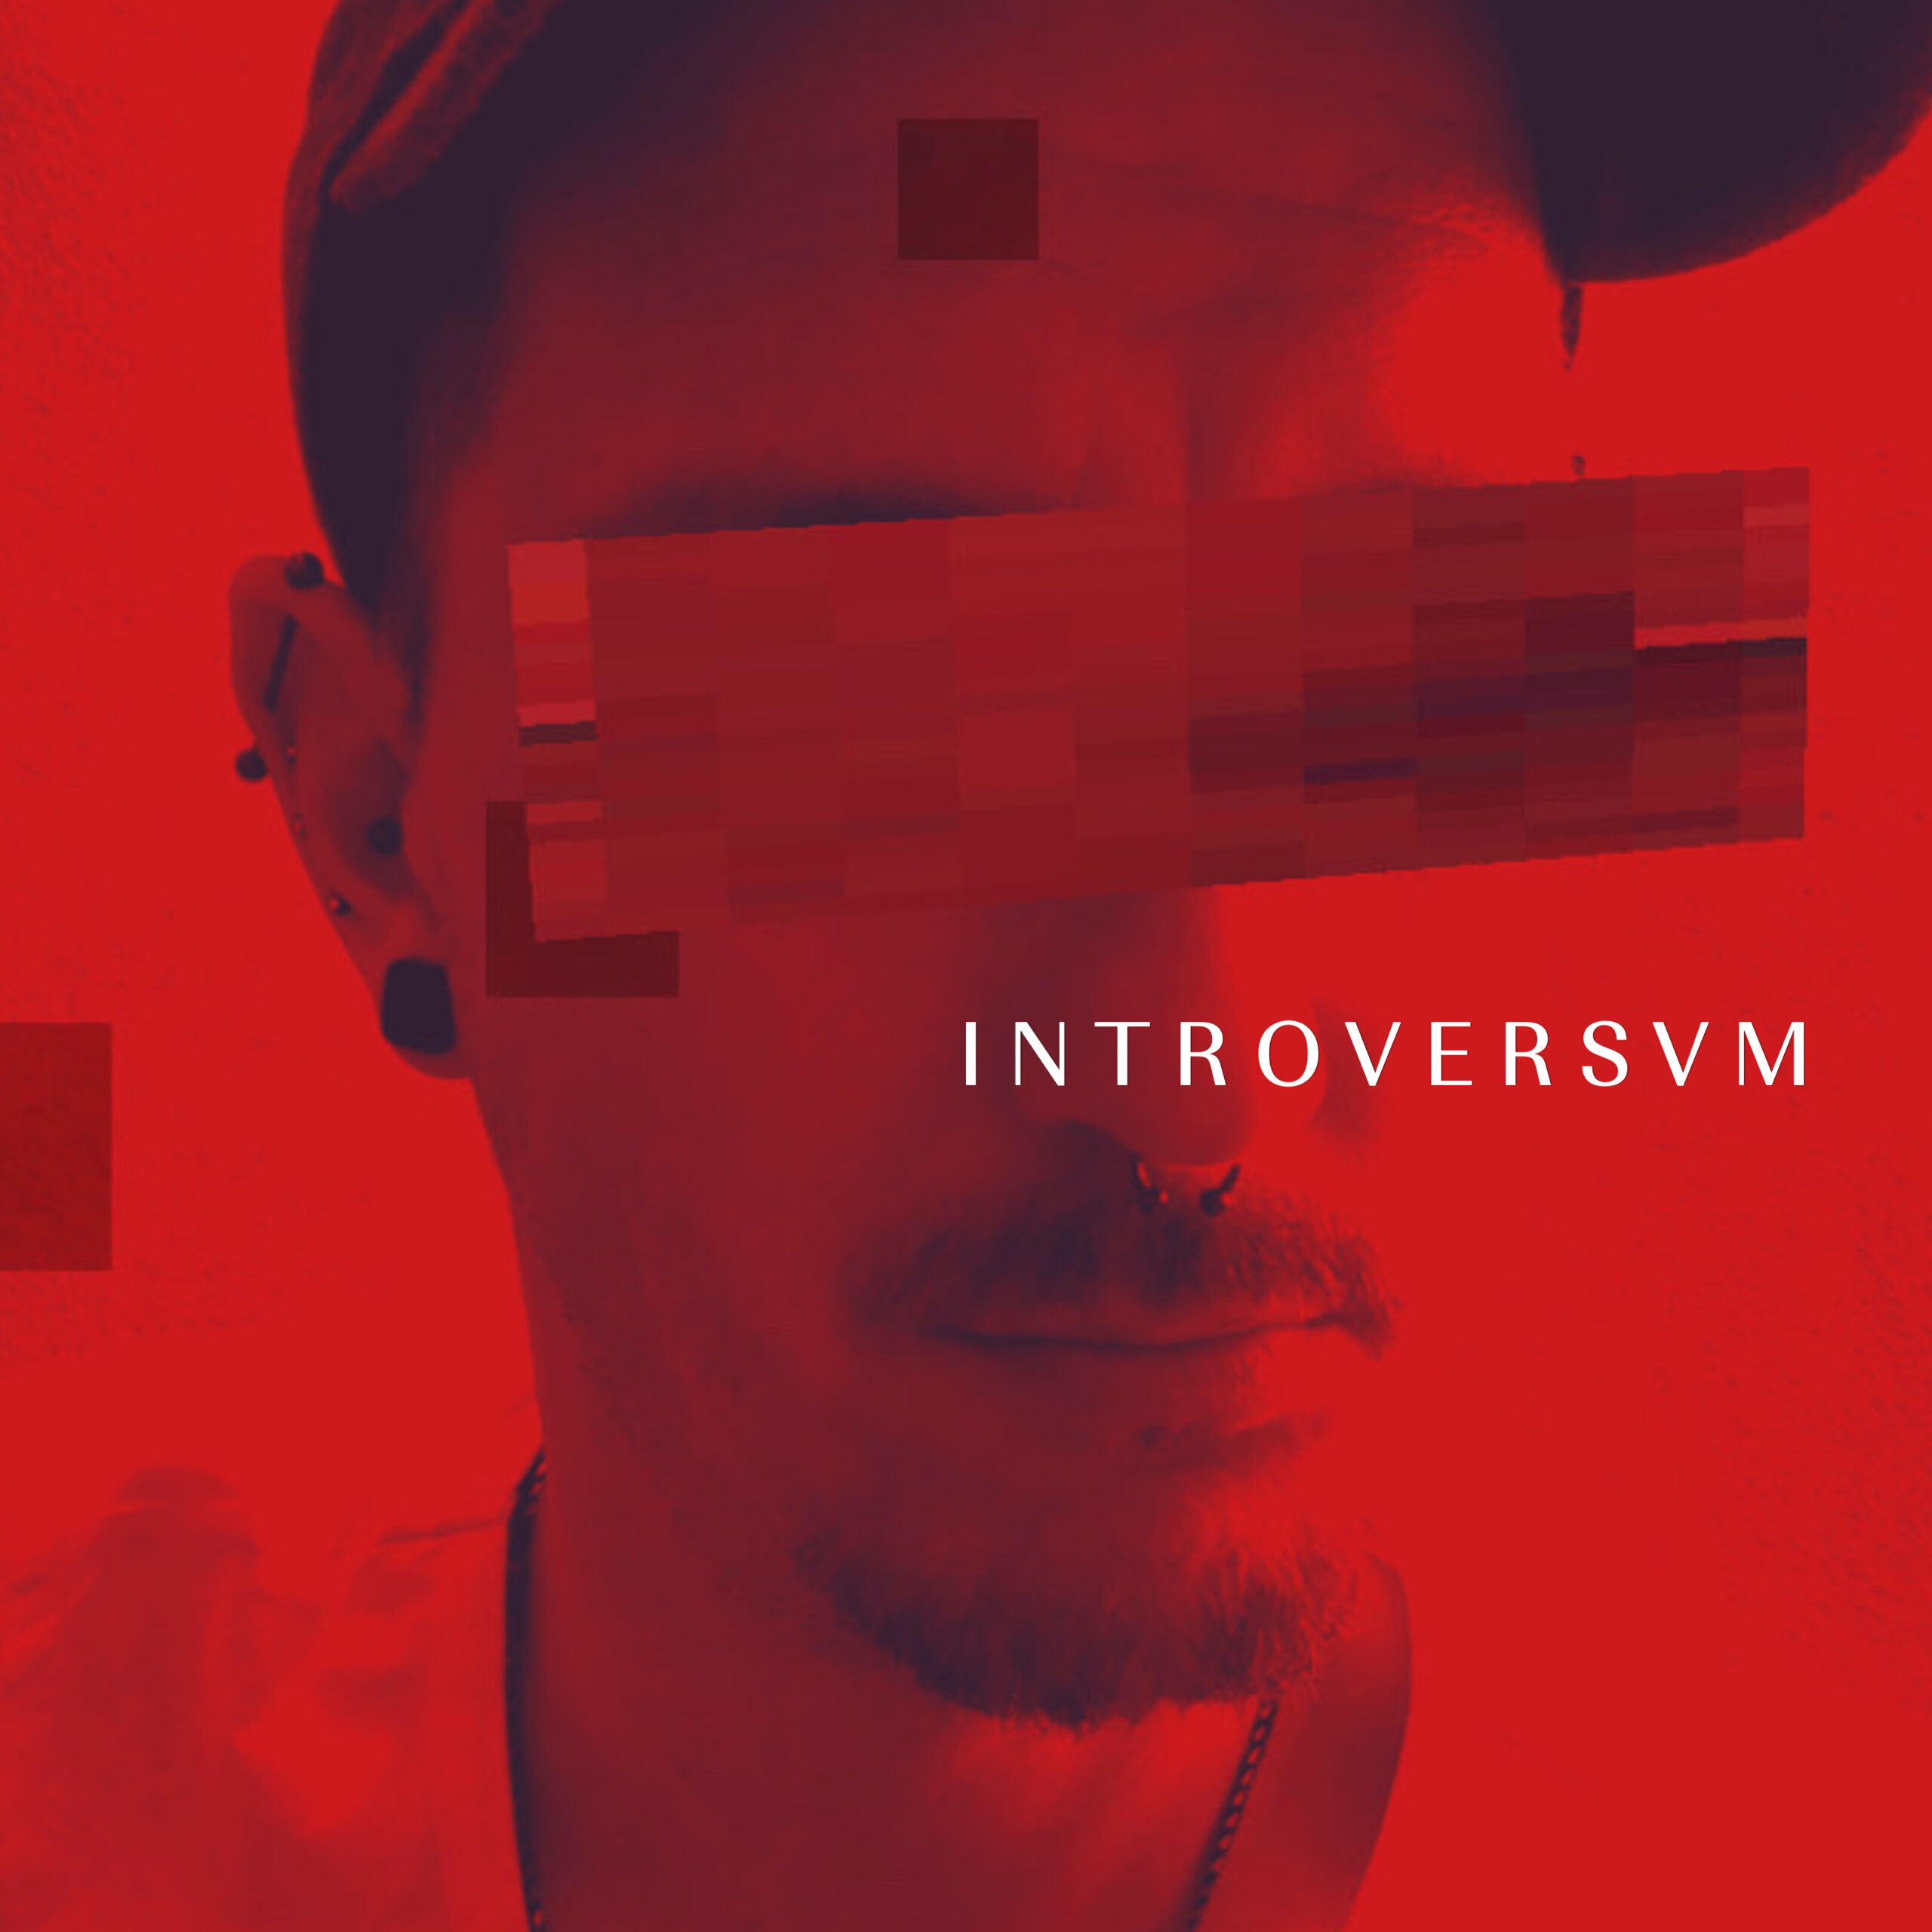 Introversum / Introversvm - volles Album von Tommy Warzecha